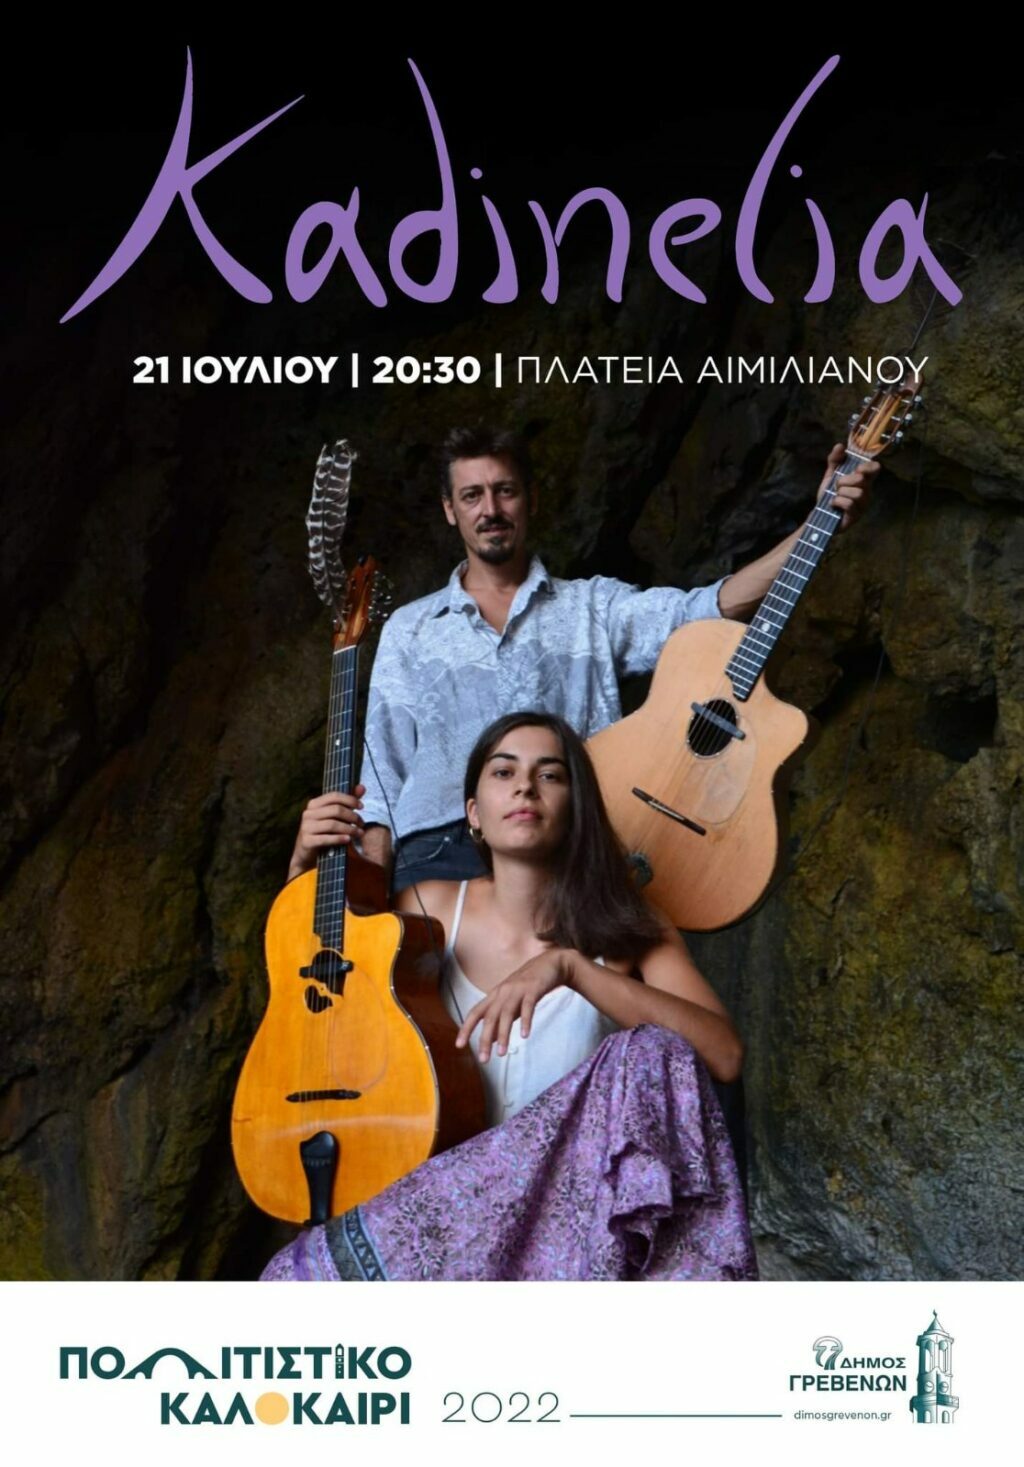 Δήμος Γρεβενών: Συναυλία των Kadinelia με ελεύθερη είσοδο στην κεντρική πλατεία Αιμιλιανού την Πέμπτη 21 Ιουλίου στις 20:30